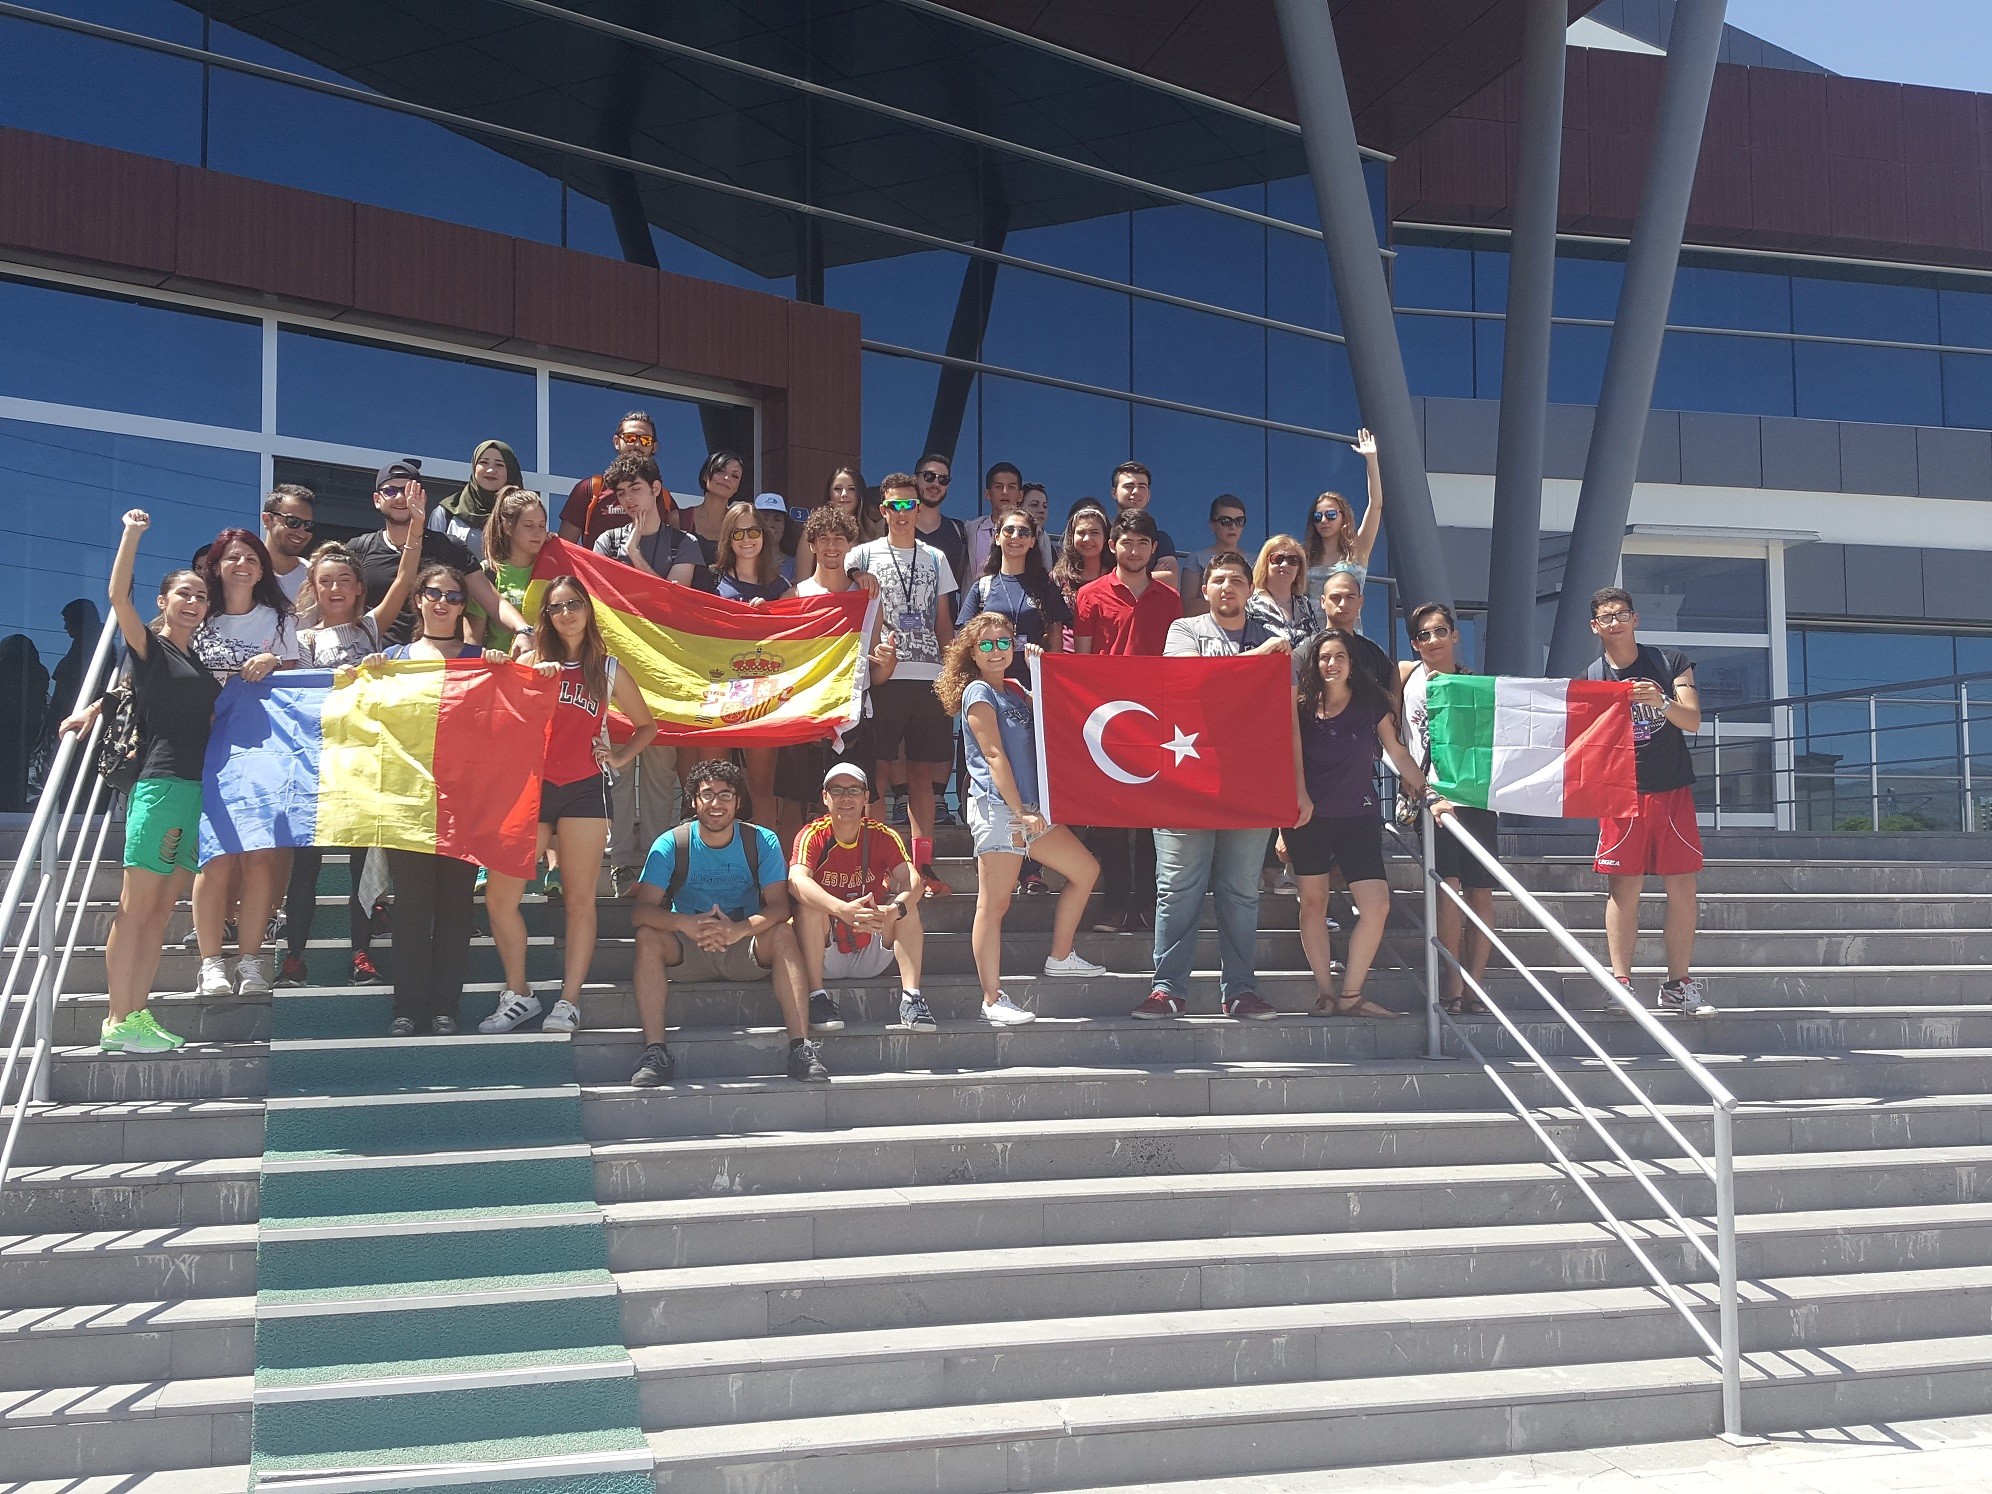 Avrupalı Gençler Kayseri’de Olimpiyat Projesine katıldı